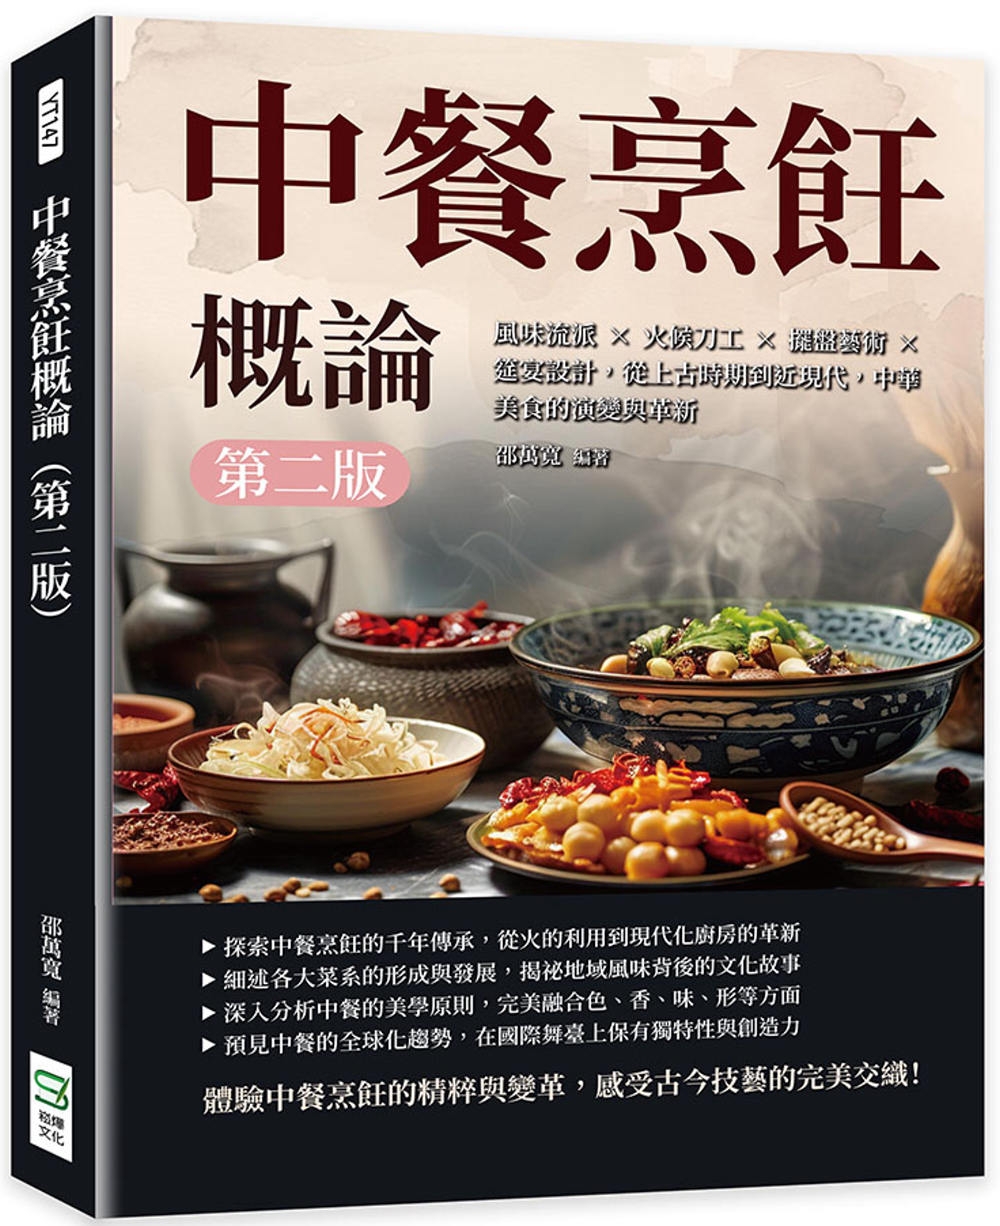 中餐烹飪概論（第二版）：風味流派×火候刀工×擺盤藝術×筵宴設計，從上古時期到近現代，中華美食的演變與革新